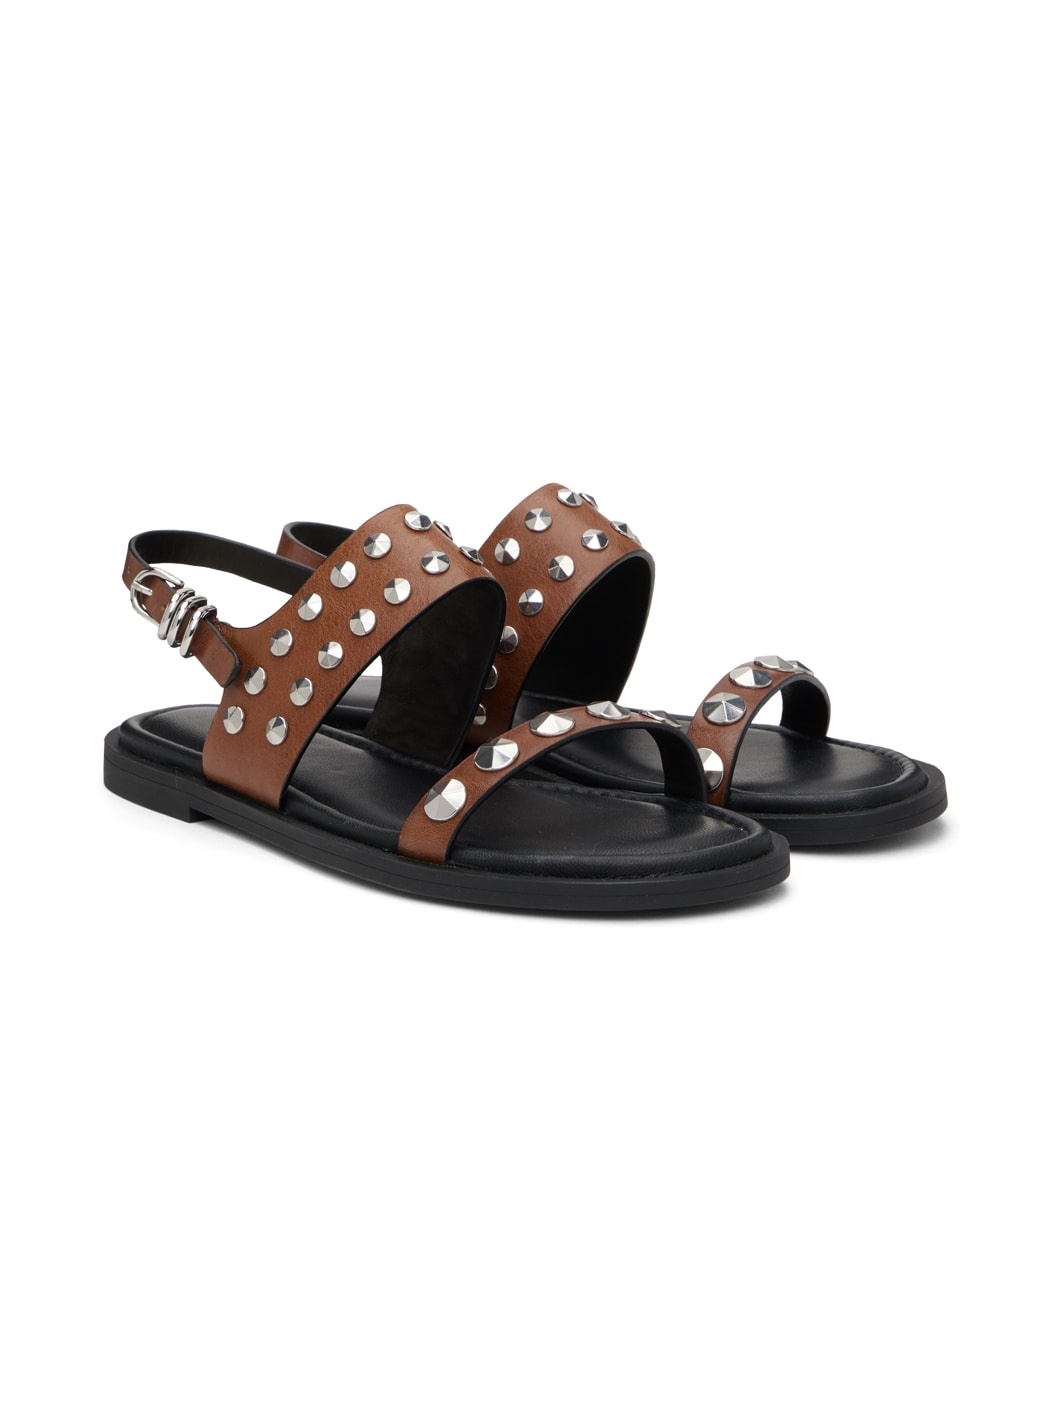 Brown & Black Geo Stud Sandals - 4